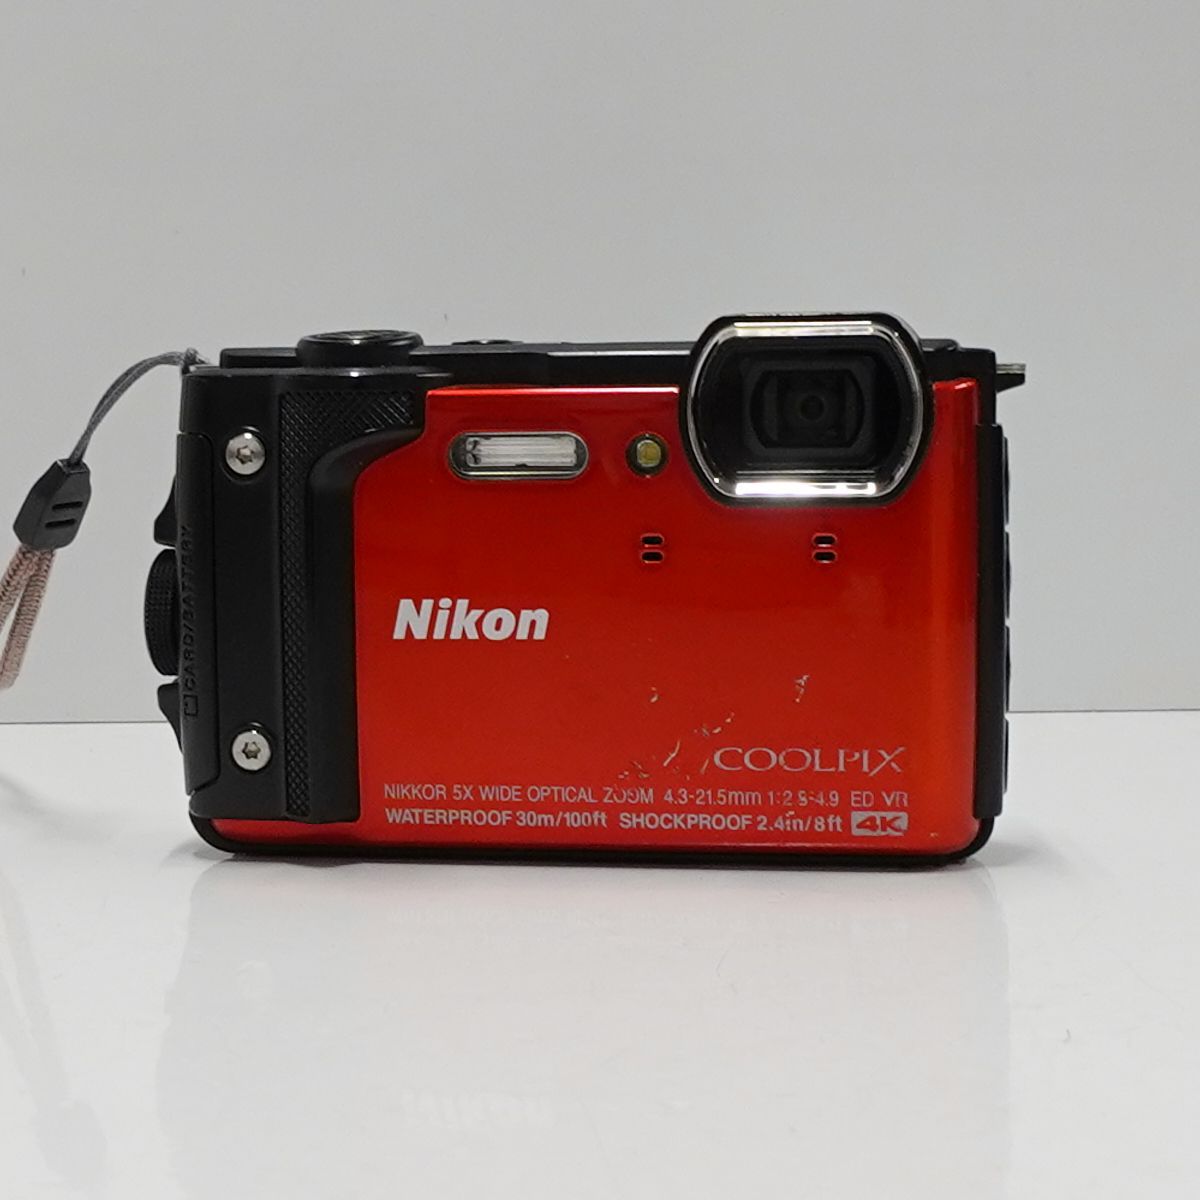 COOLPIX W300 Nikon USED品 防水 デジタルカメラ 本体+バッテリー 耐